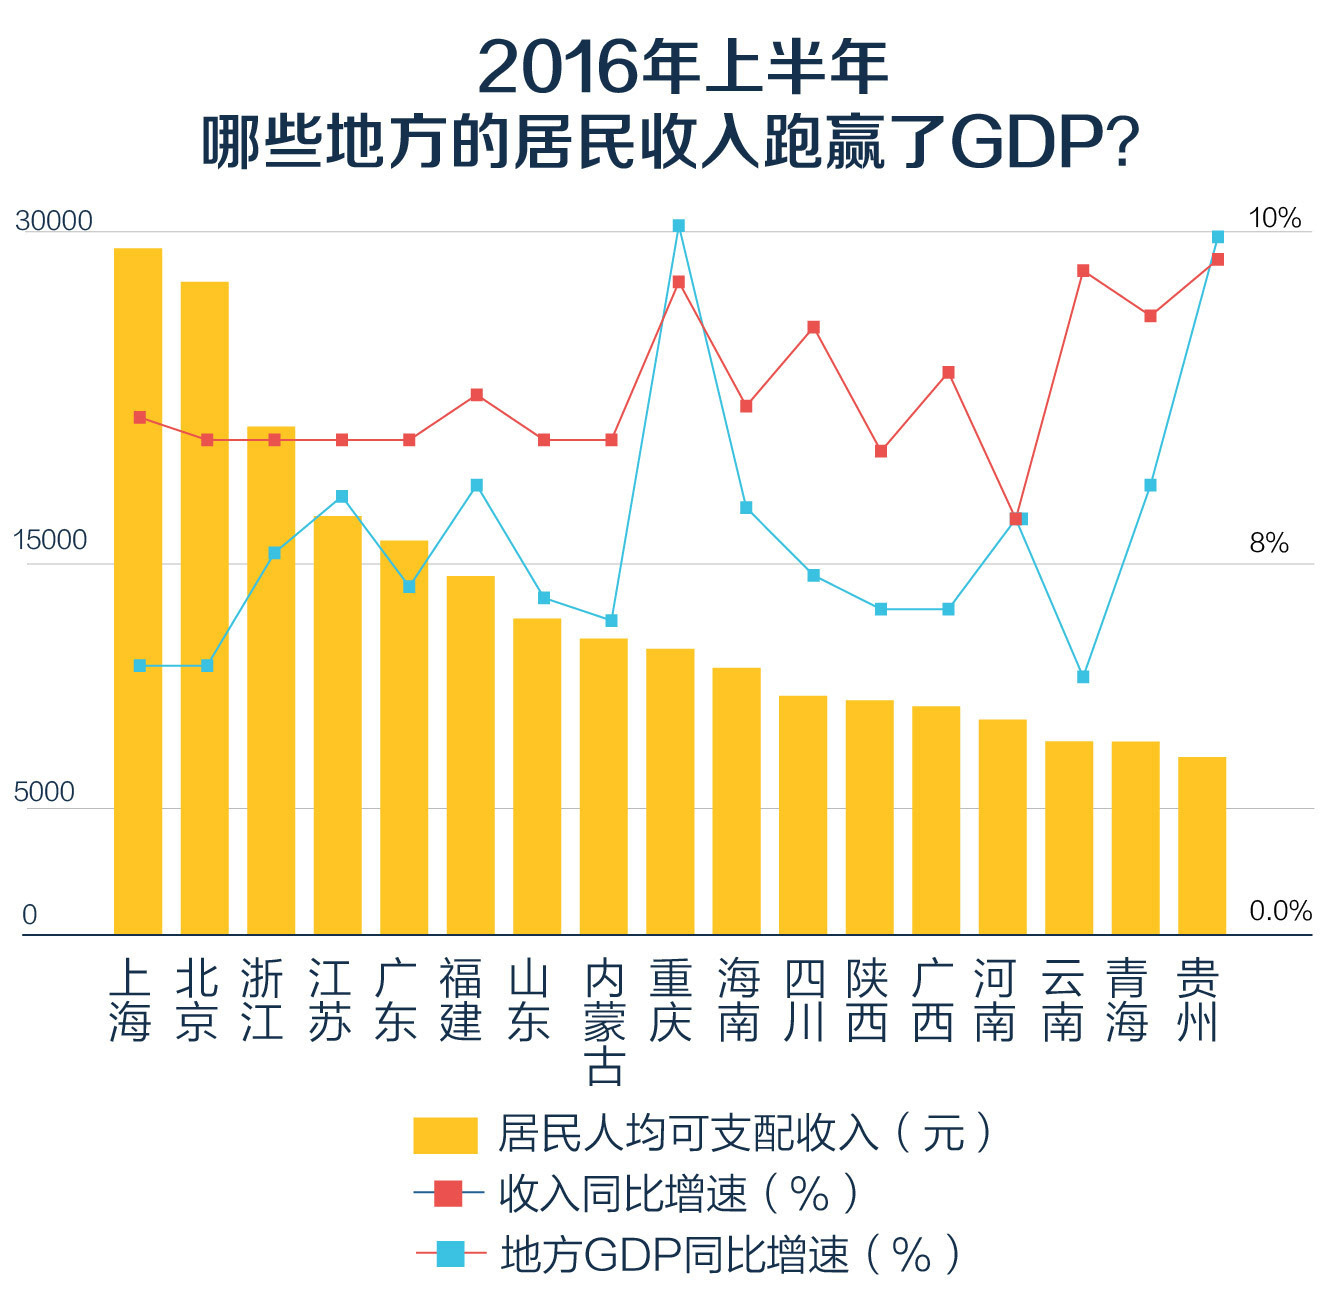 重庆市企业GDP_中国城市gdp排名2017 中国城市GDP2017排名 重庆GDP总量将赶超天津 国内财经